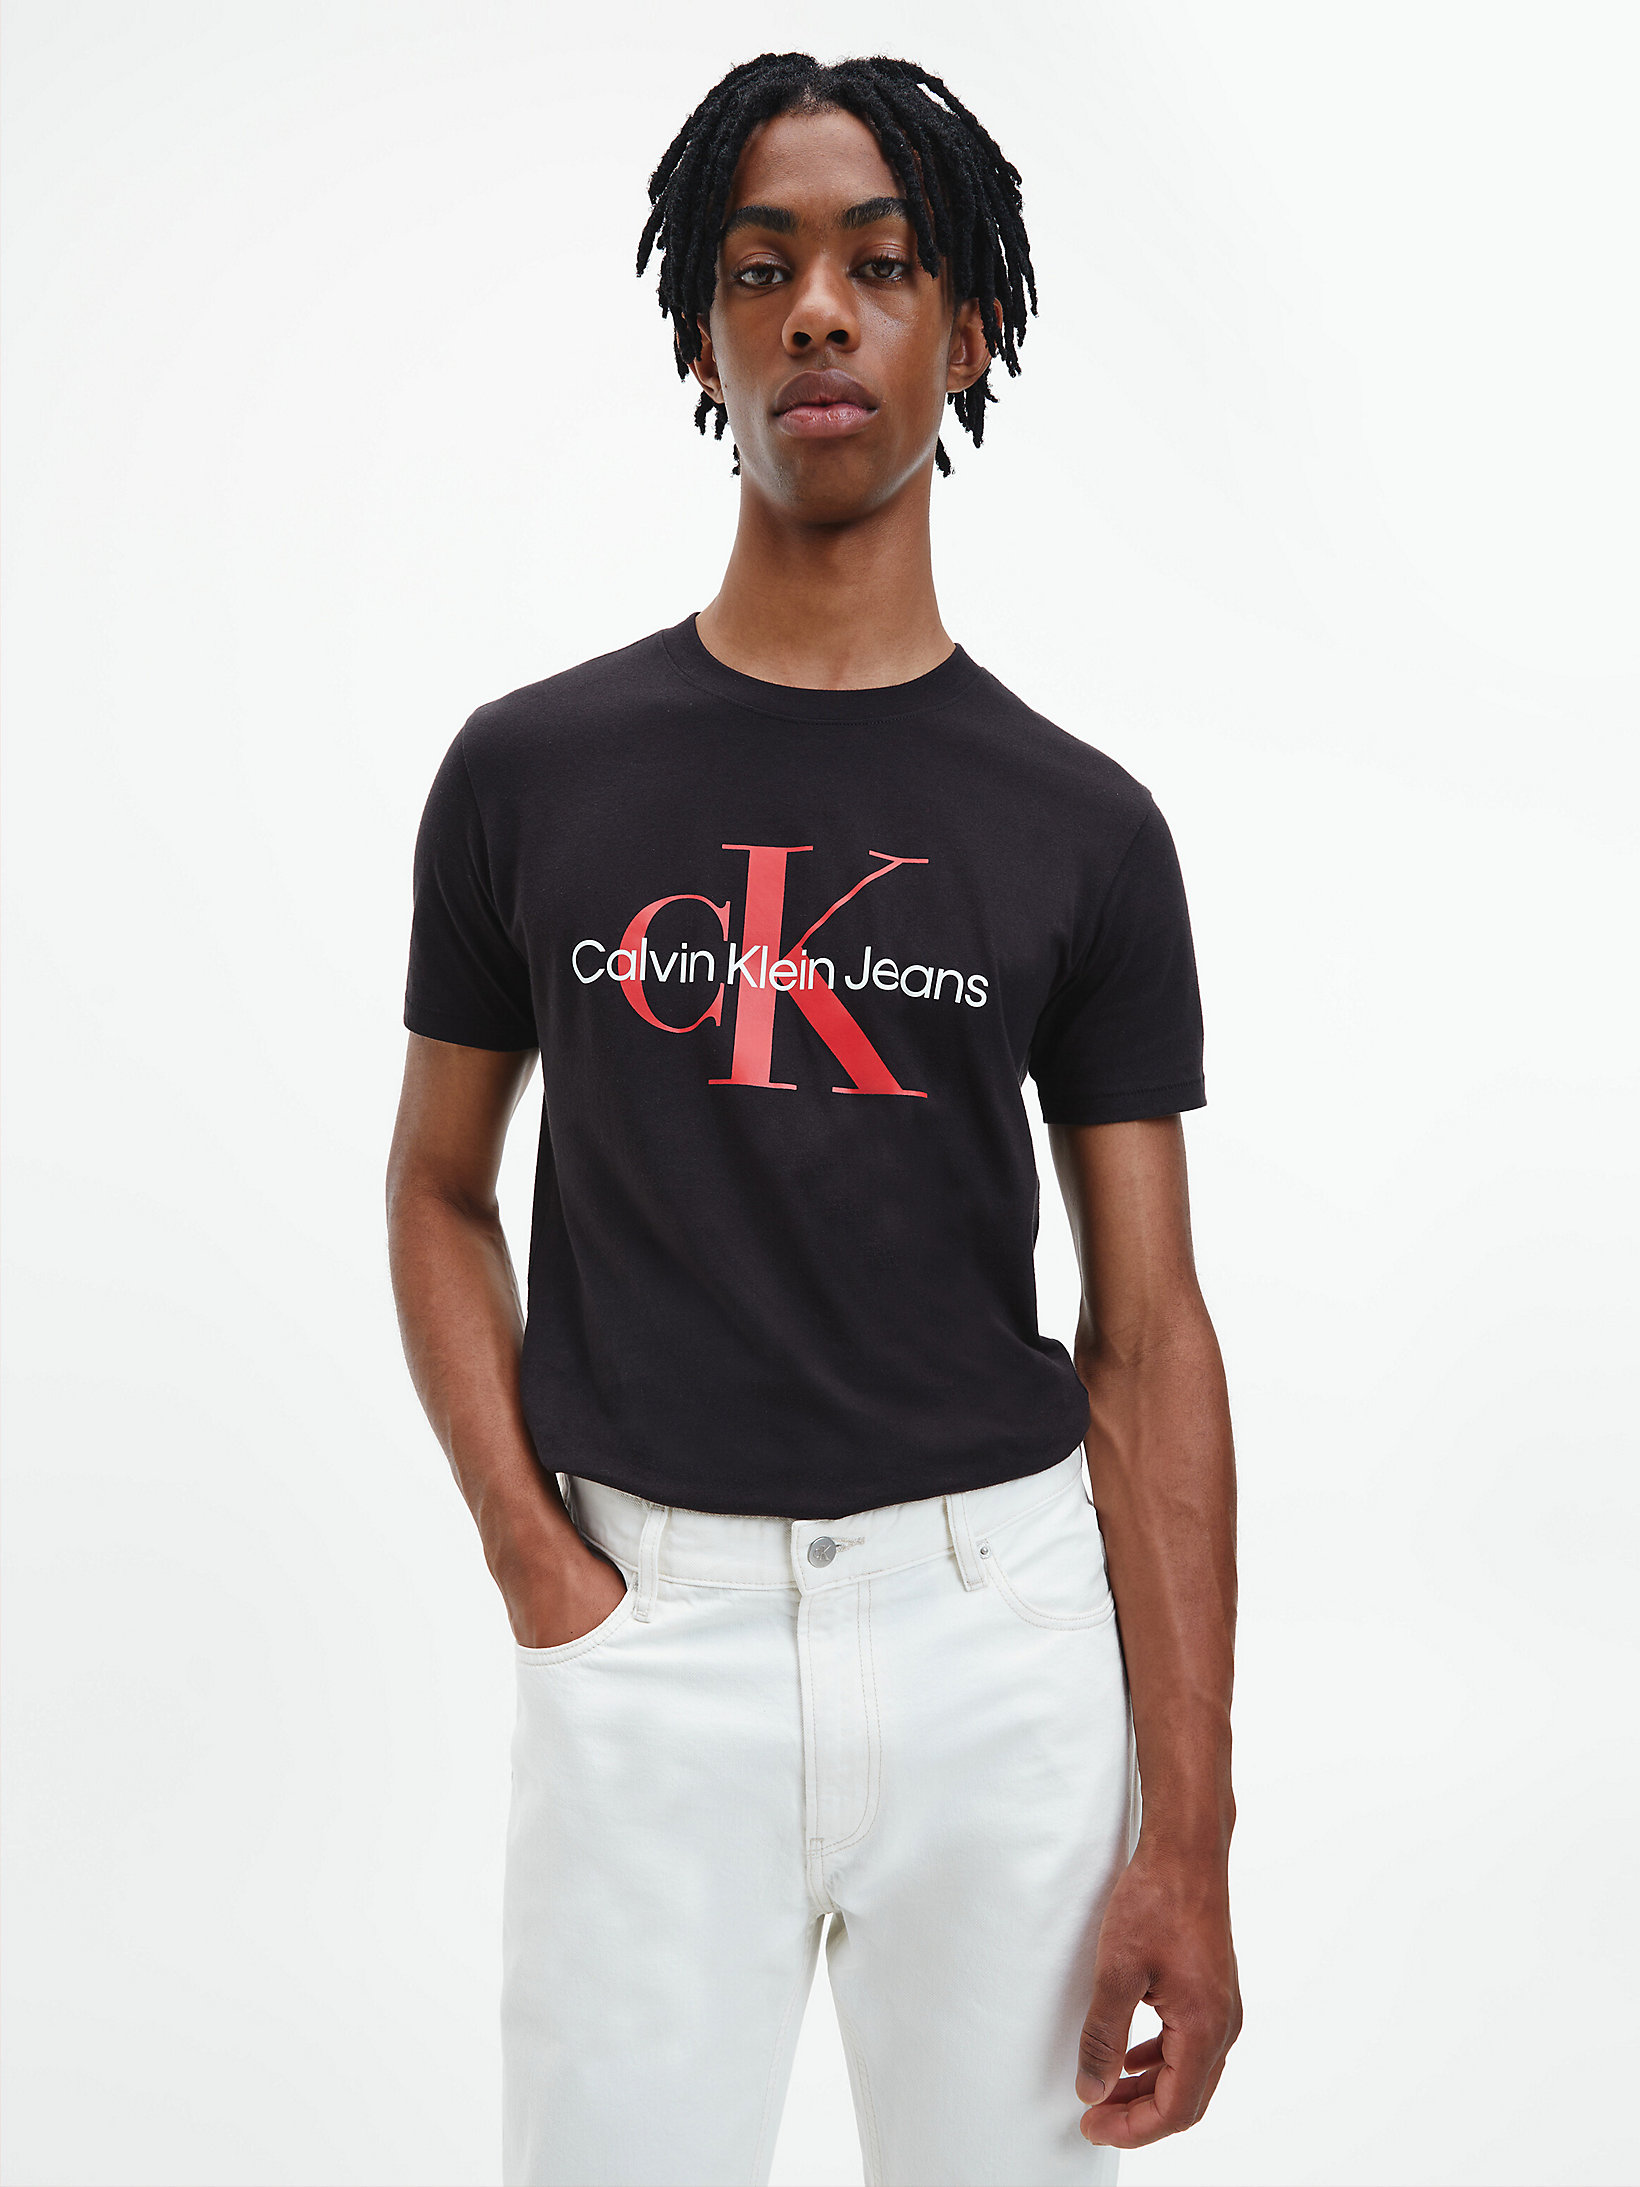 CK Black / Salsa > Schmales Logo-T-Shirt Aus Bio-Baumwolle > undefined Herren - Calvin Klein